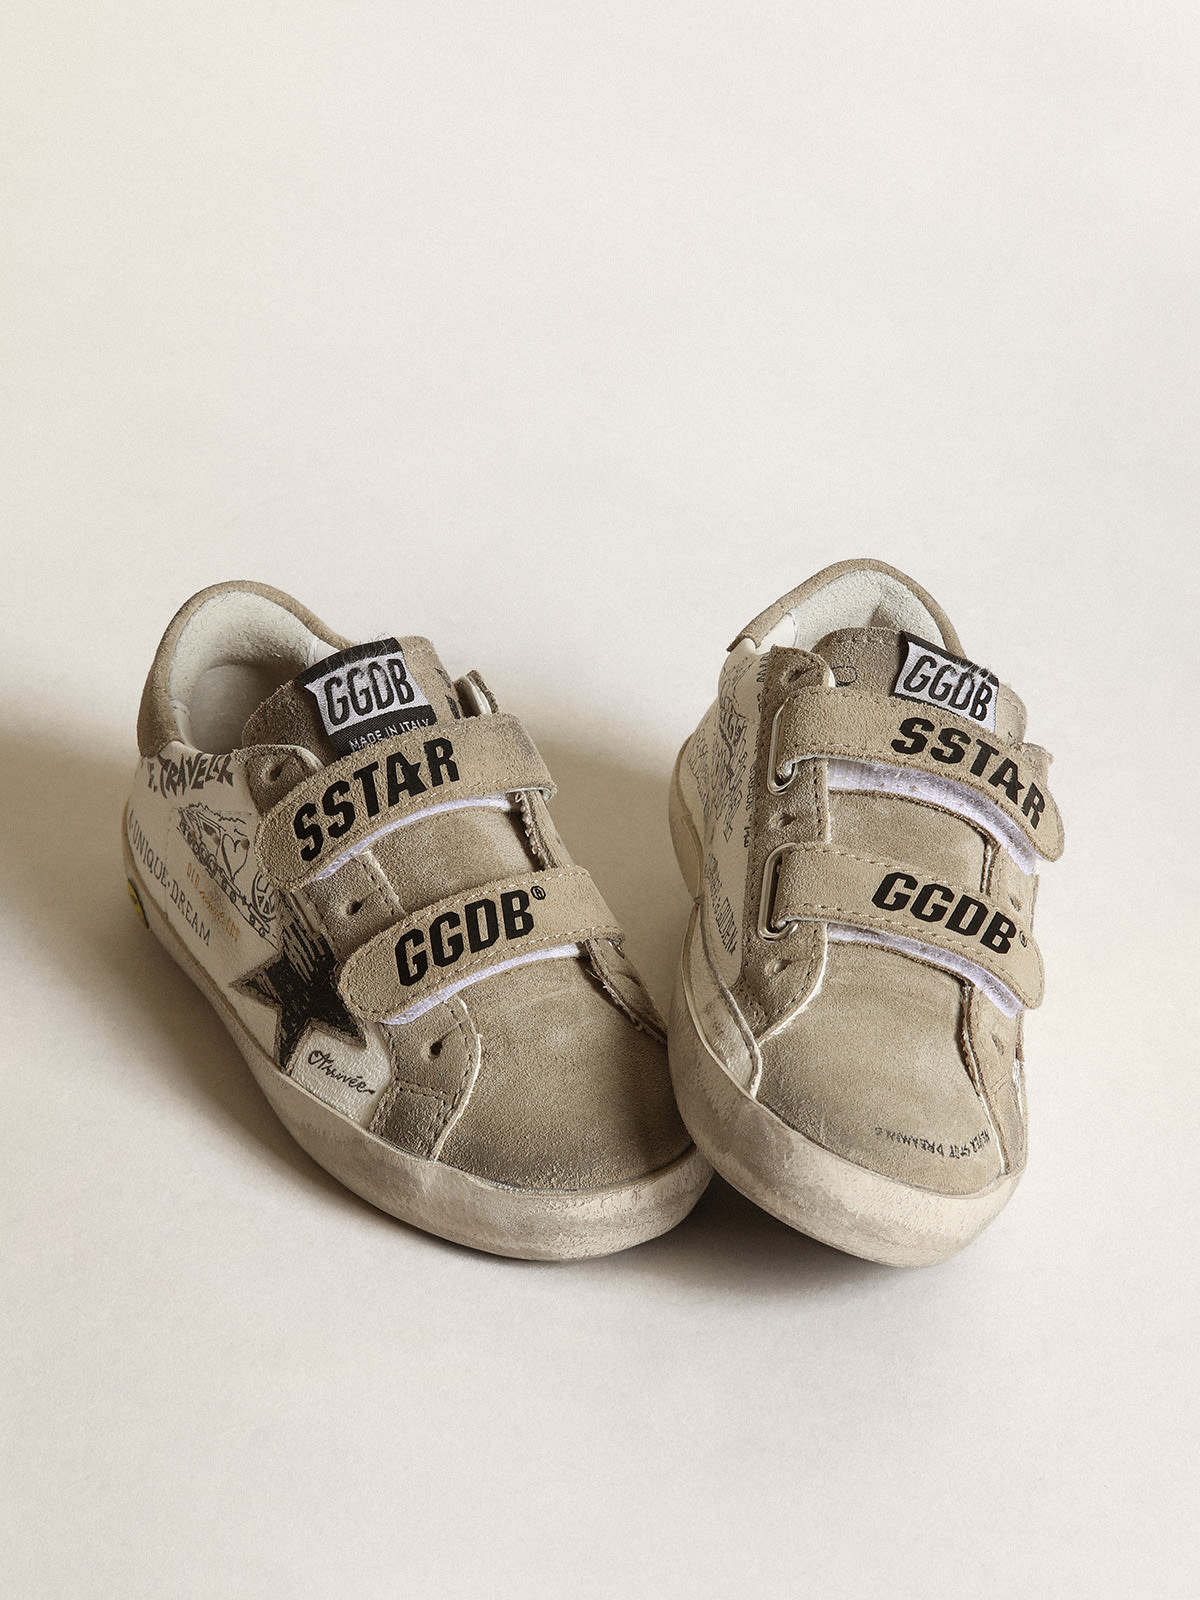 Golden Goose - Sneakers Old School Young en cuir nappa blanc avec empiècements en daim couleur tourterelle et étoile dépareillée in 